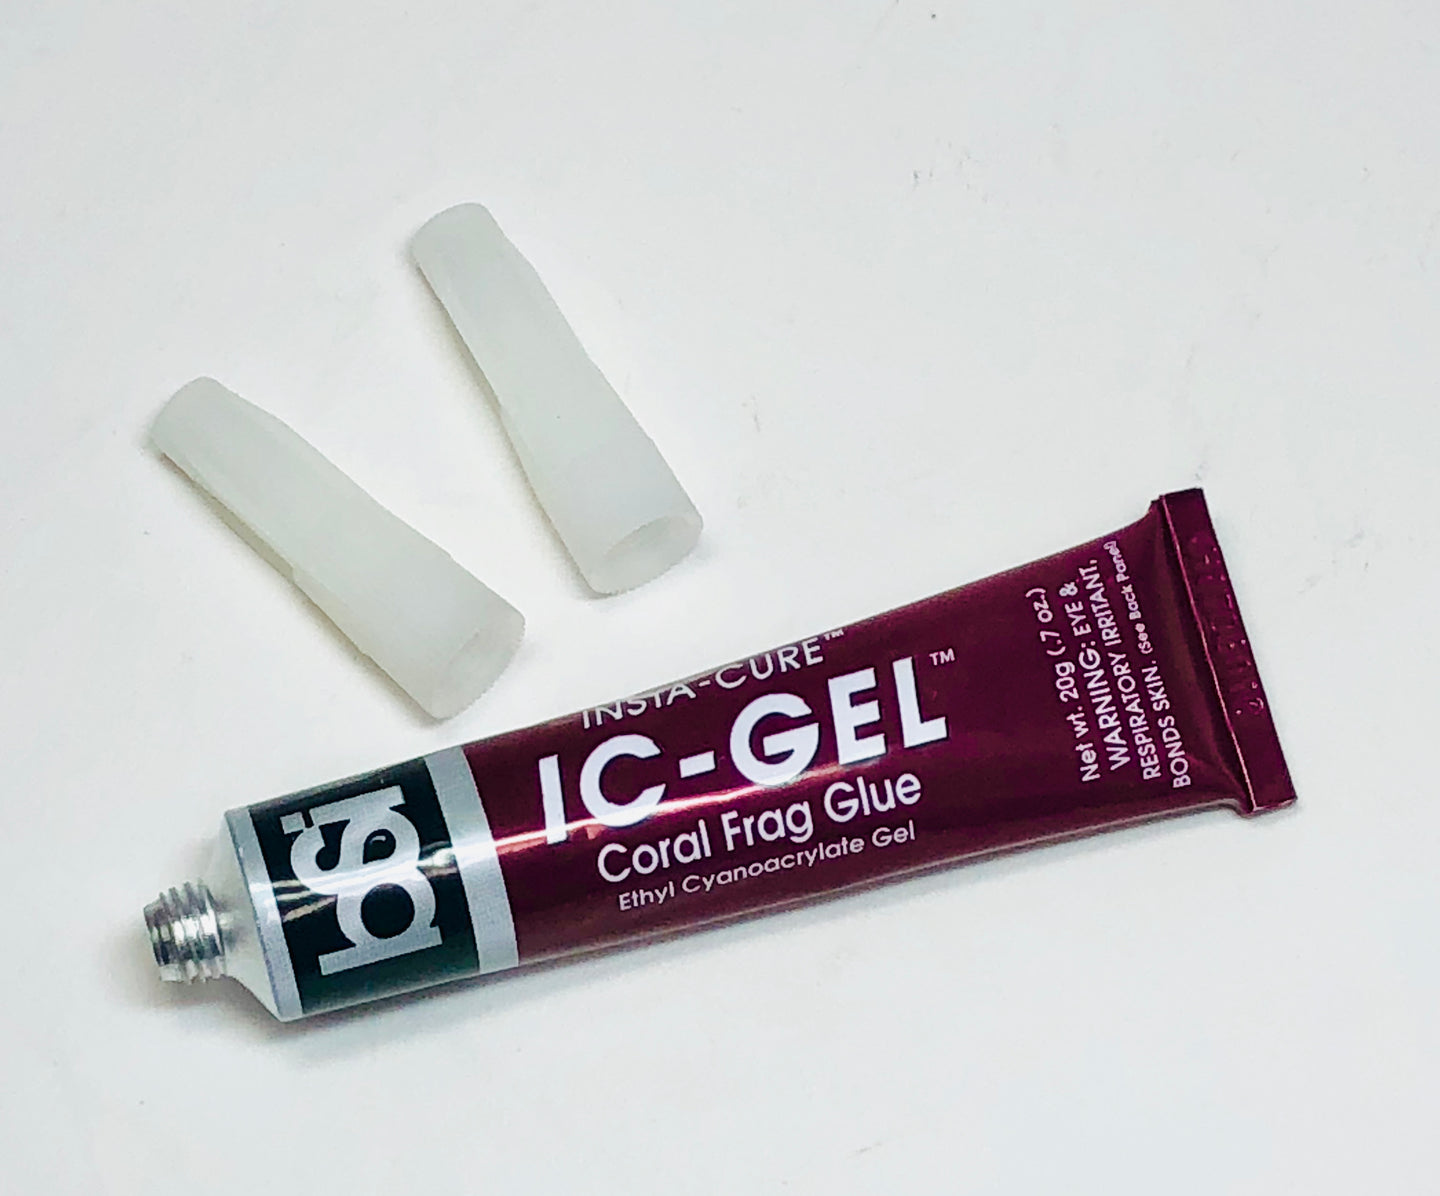 BSI 115 IC-GEL Ethyl Cyanoacrylate Gel Tube 50g